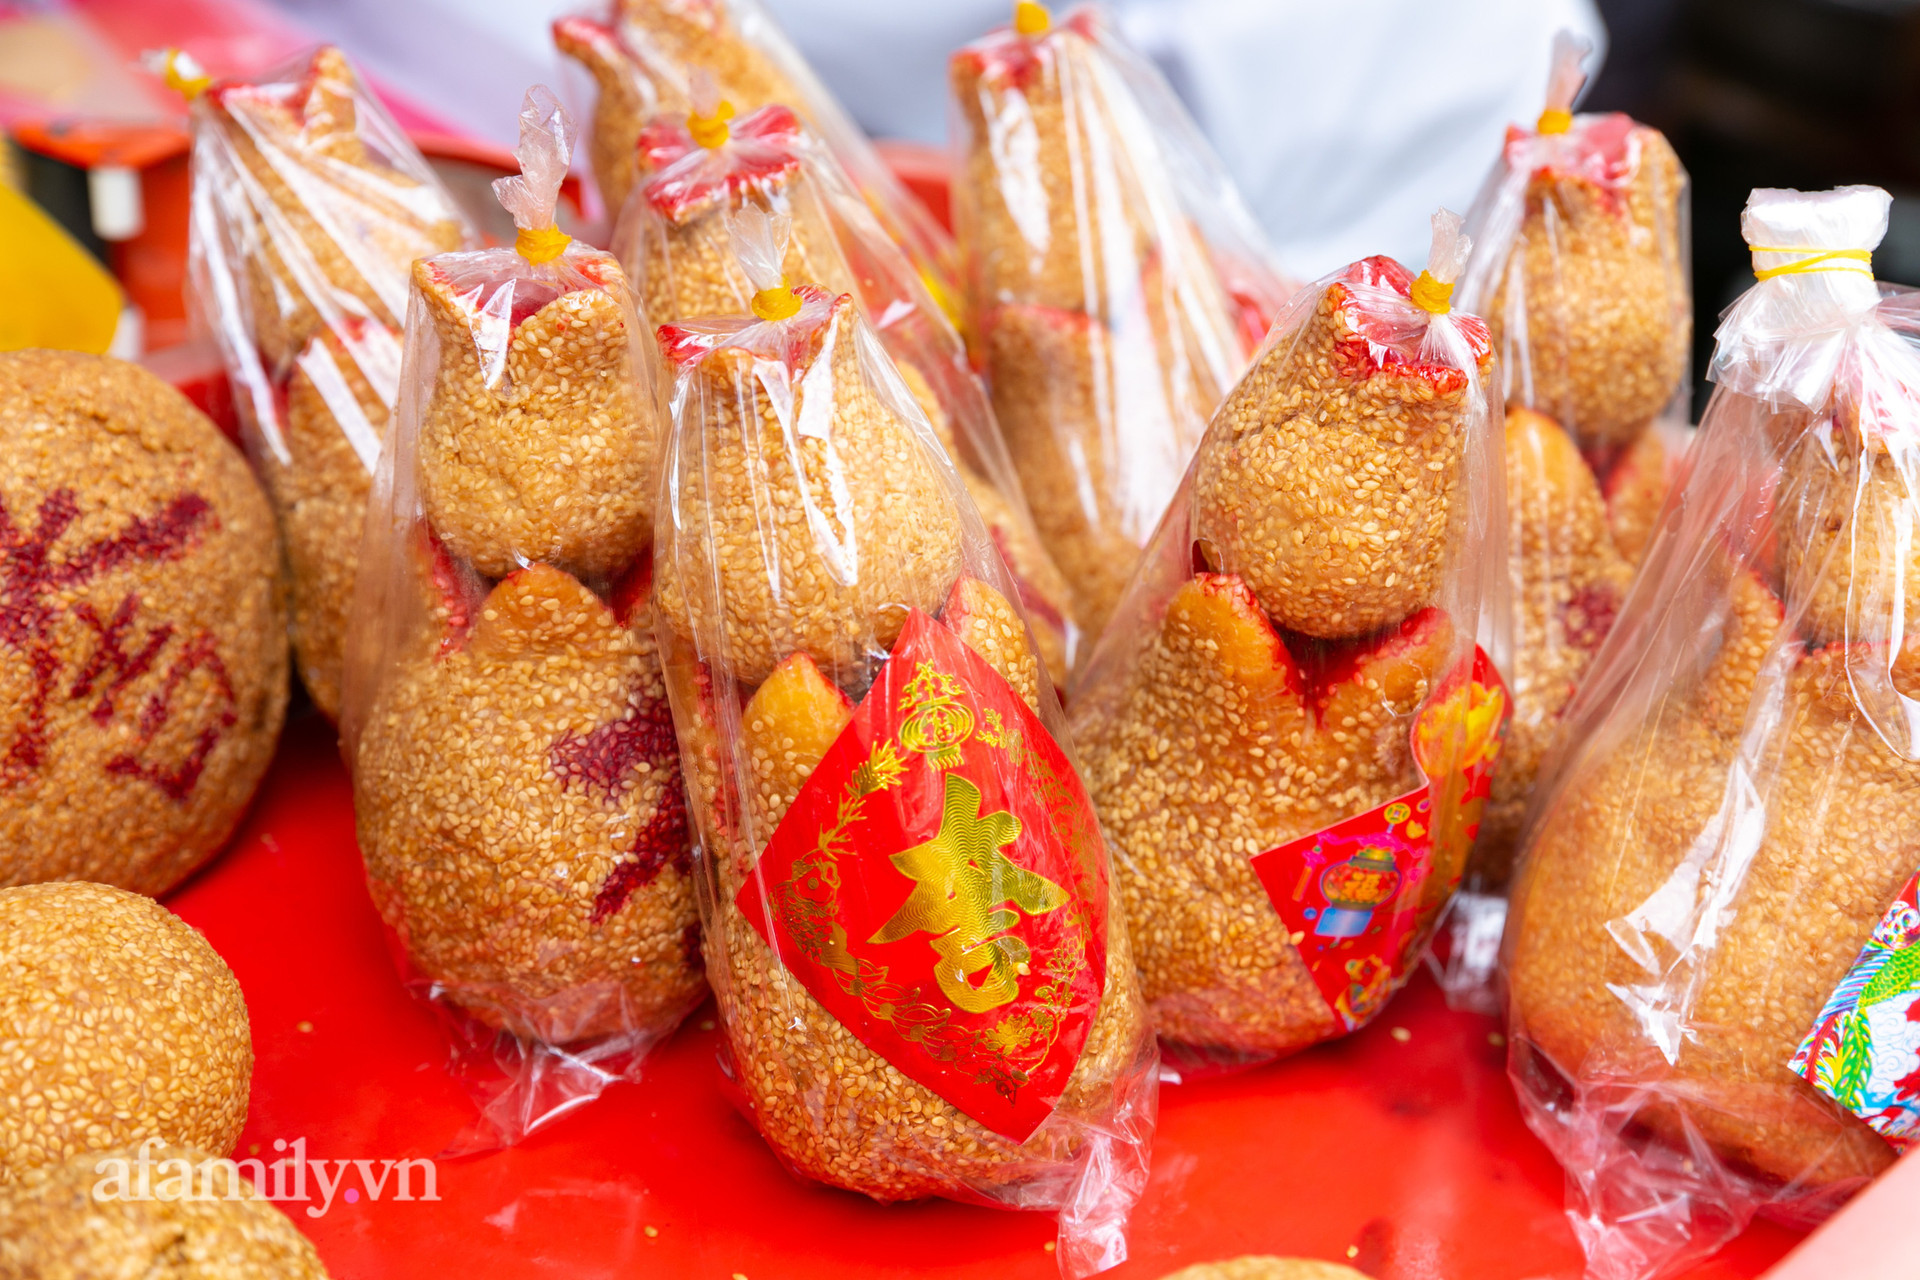 Độc đáo bánh lựu cầu duyên truyền thống của người Hoa ở Sài Gòn: Chỉ bán duy nhất một lần trong năm, 4 người phụ làm hơn 1.000 cái mà bán sạch trong 1 tiếng - Ảnh 22.